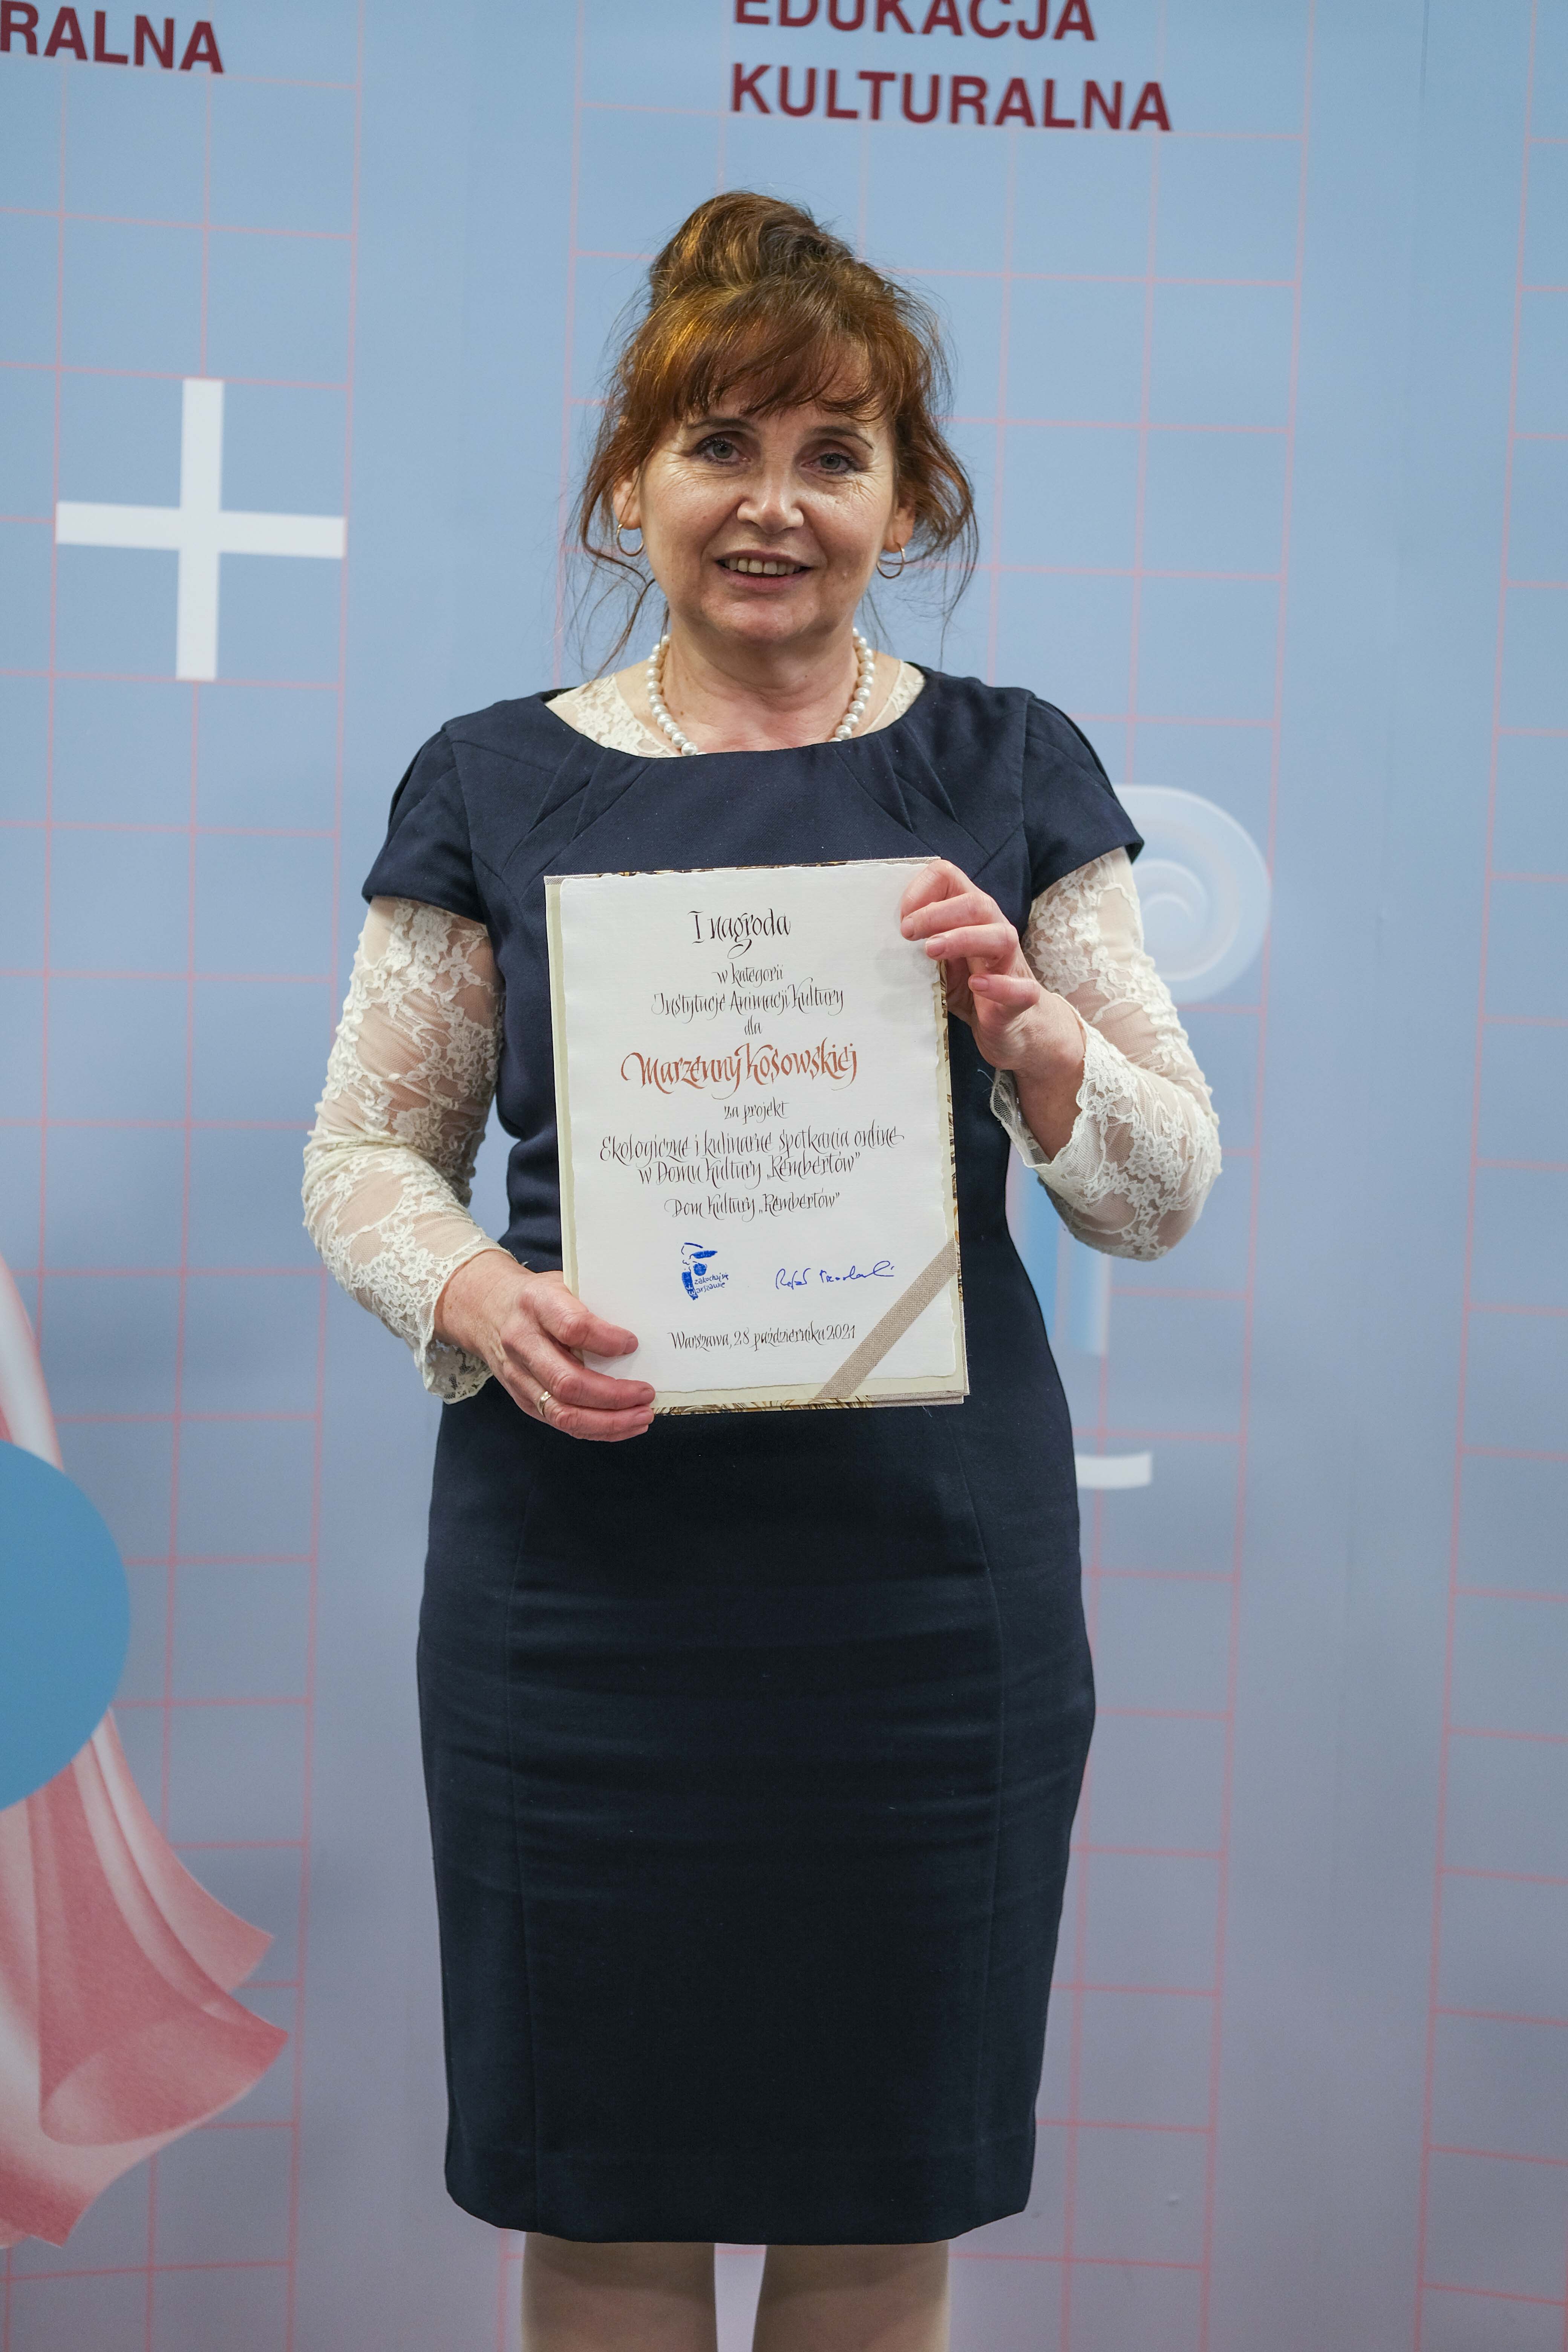 Na tle ścianki prasowej pozuje z dyplomem Marzenna Kosowska, laureatka 1 miejsca Warszawskiej Nagrody Edukacji Kulturalnej 2021, w kategorii instytucje kultury.